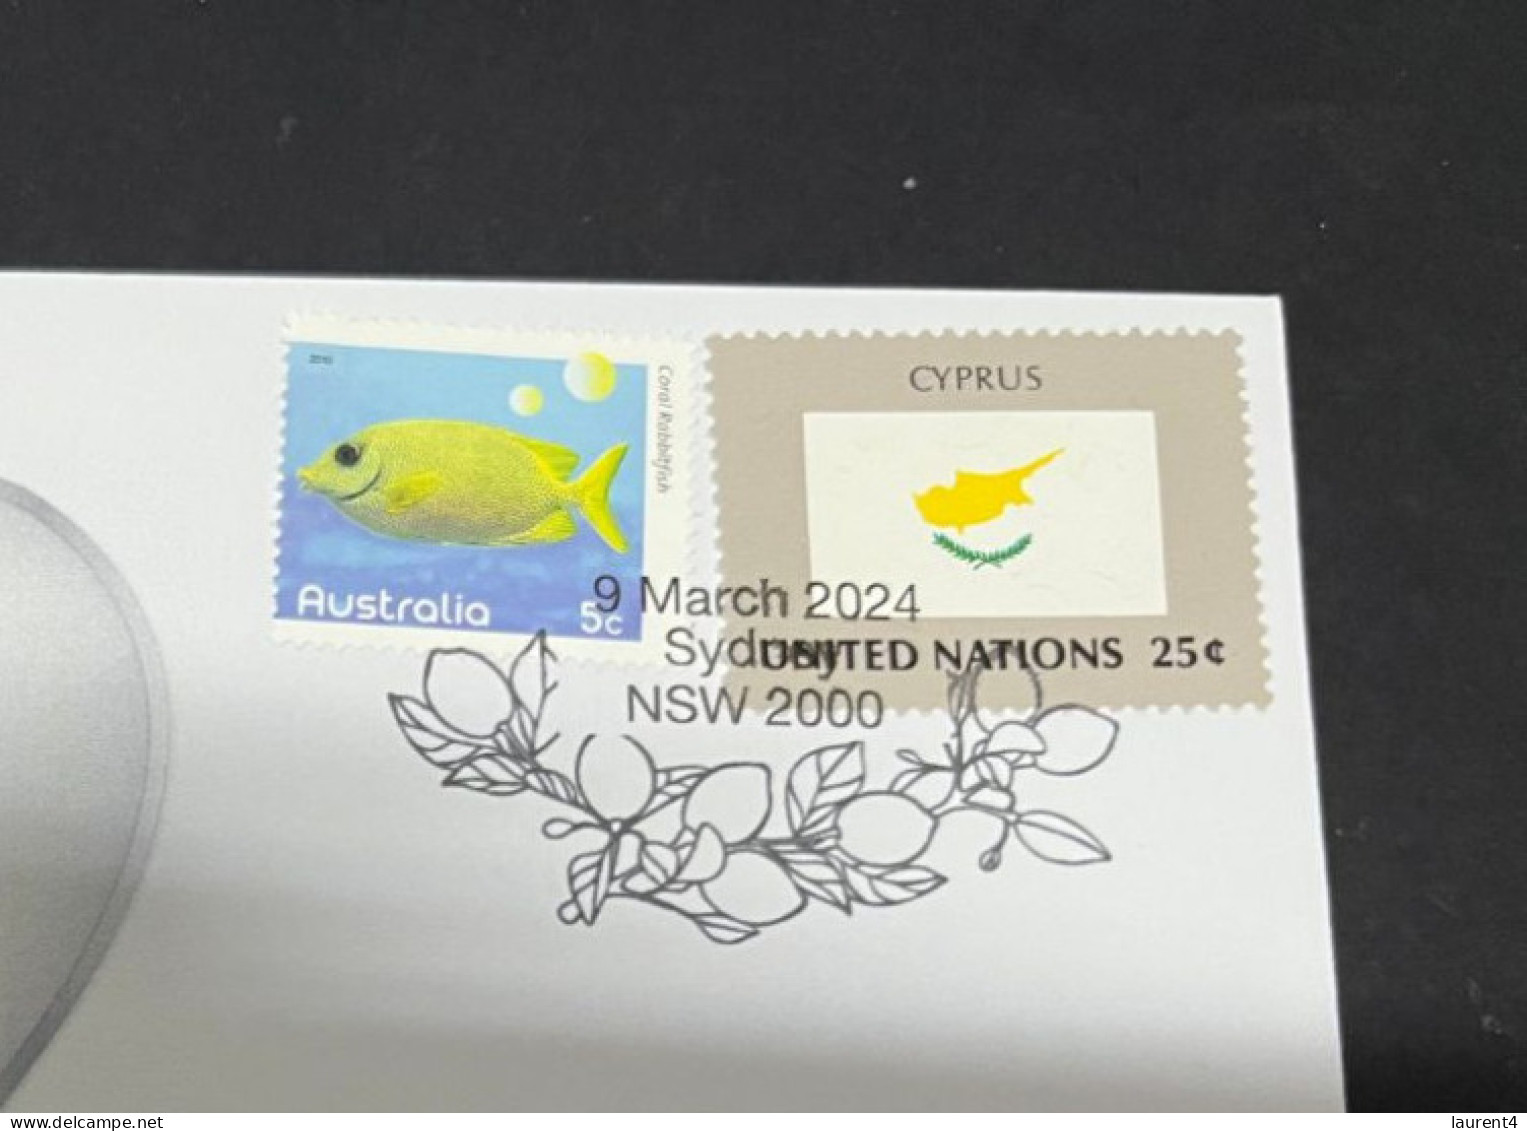 9-3-2024 (2 Y 33) COVID-19 4th Anniversary - Cyprus - 9 March 2024 (with Cyprus UN Flag Stamp) - Malattie